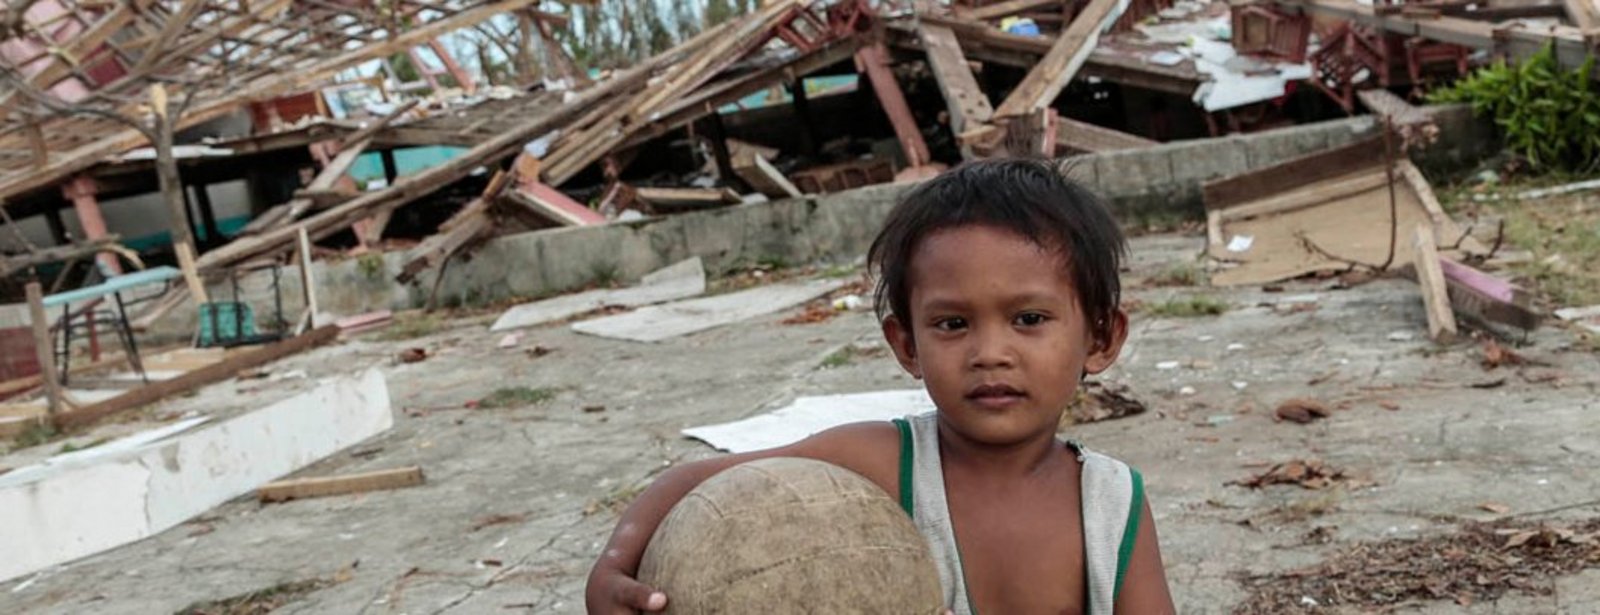 Kleiner Junge mit Ball vor zerstörten Häusern